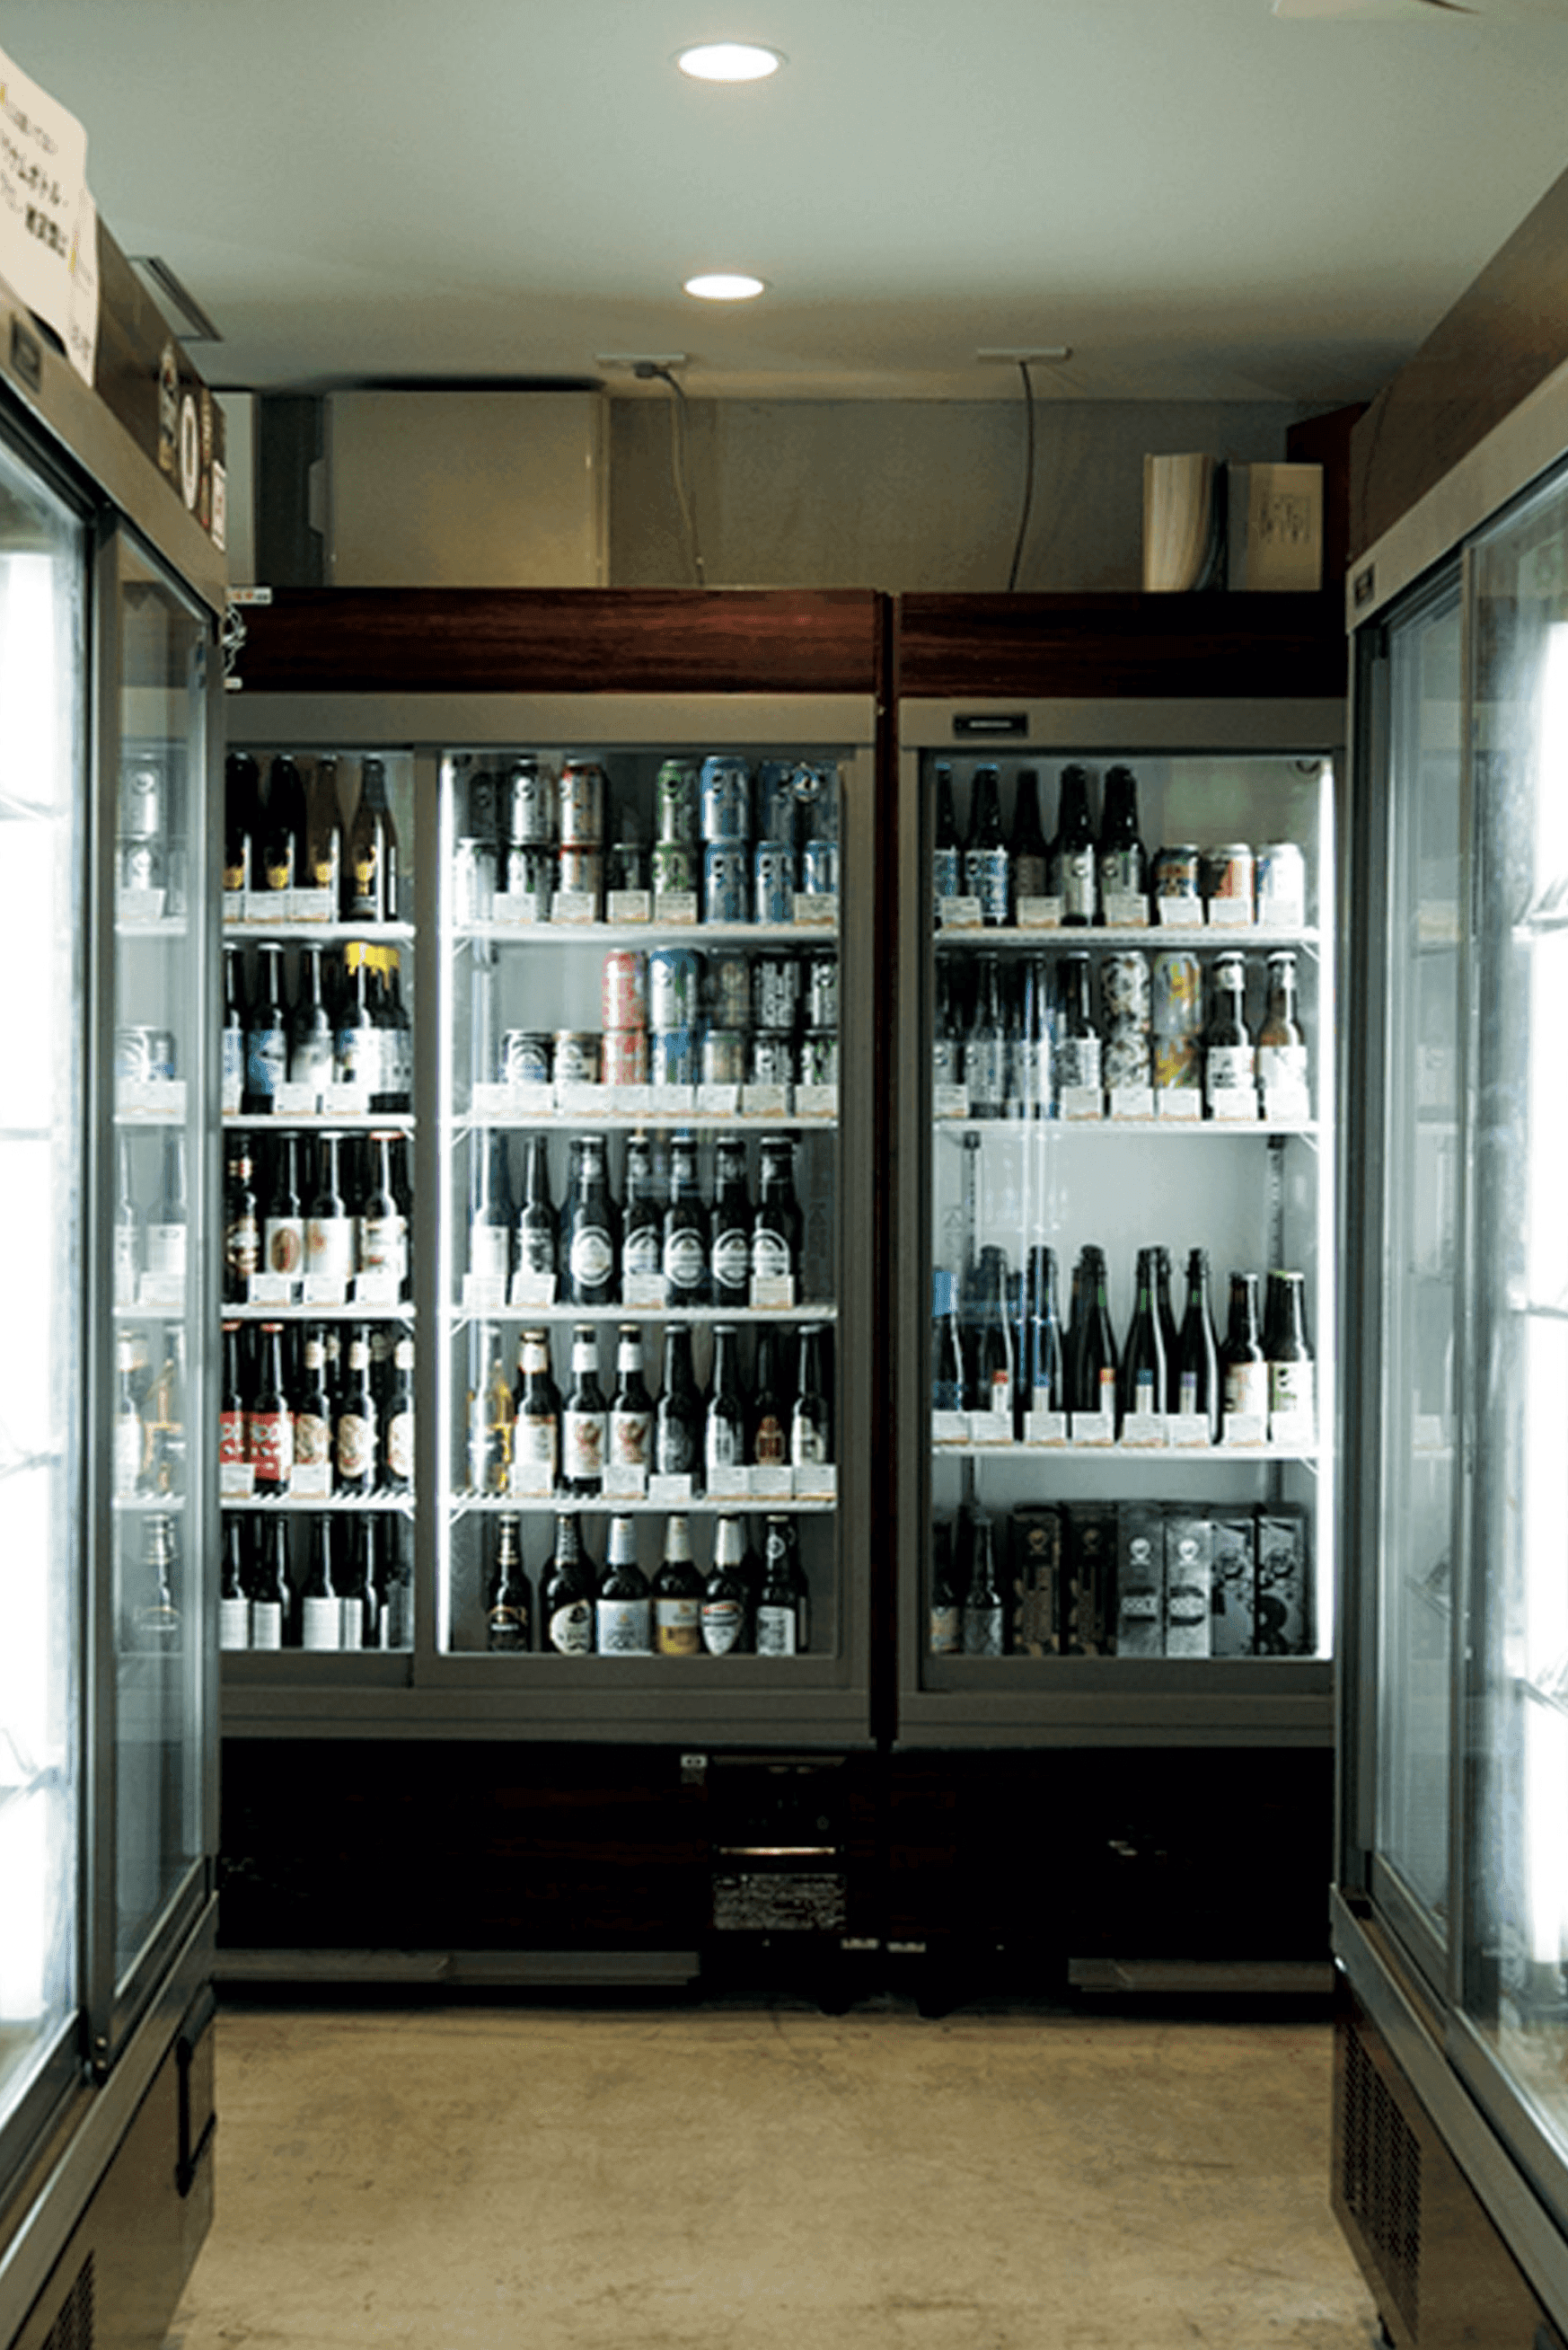 ビールファン垂涎の酒屋さん「びあマ」とは? 1200種類の品ぞろえ! 世界約40カ国のビールが飲めちゃいます